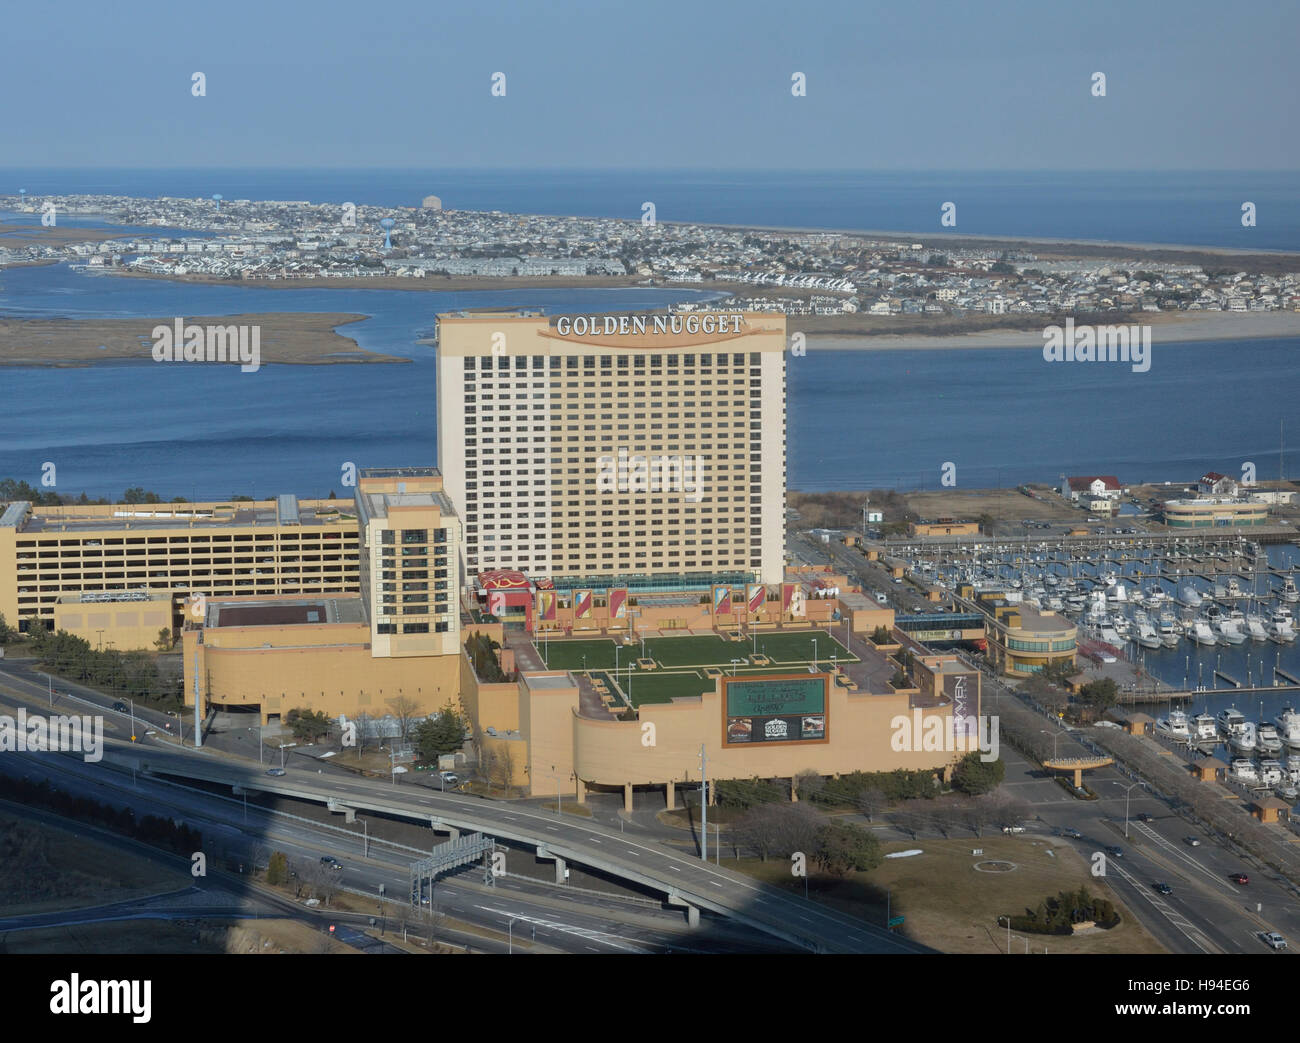 golden nugget online casino atlantic city nj